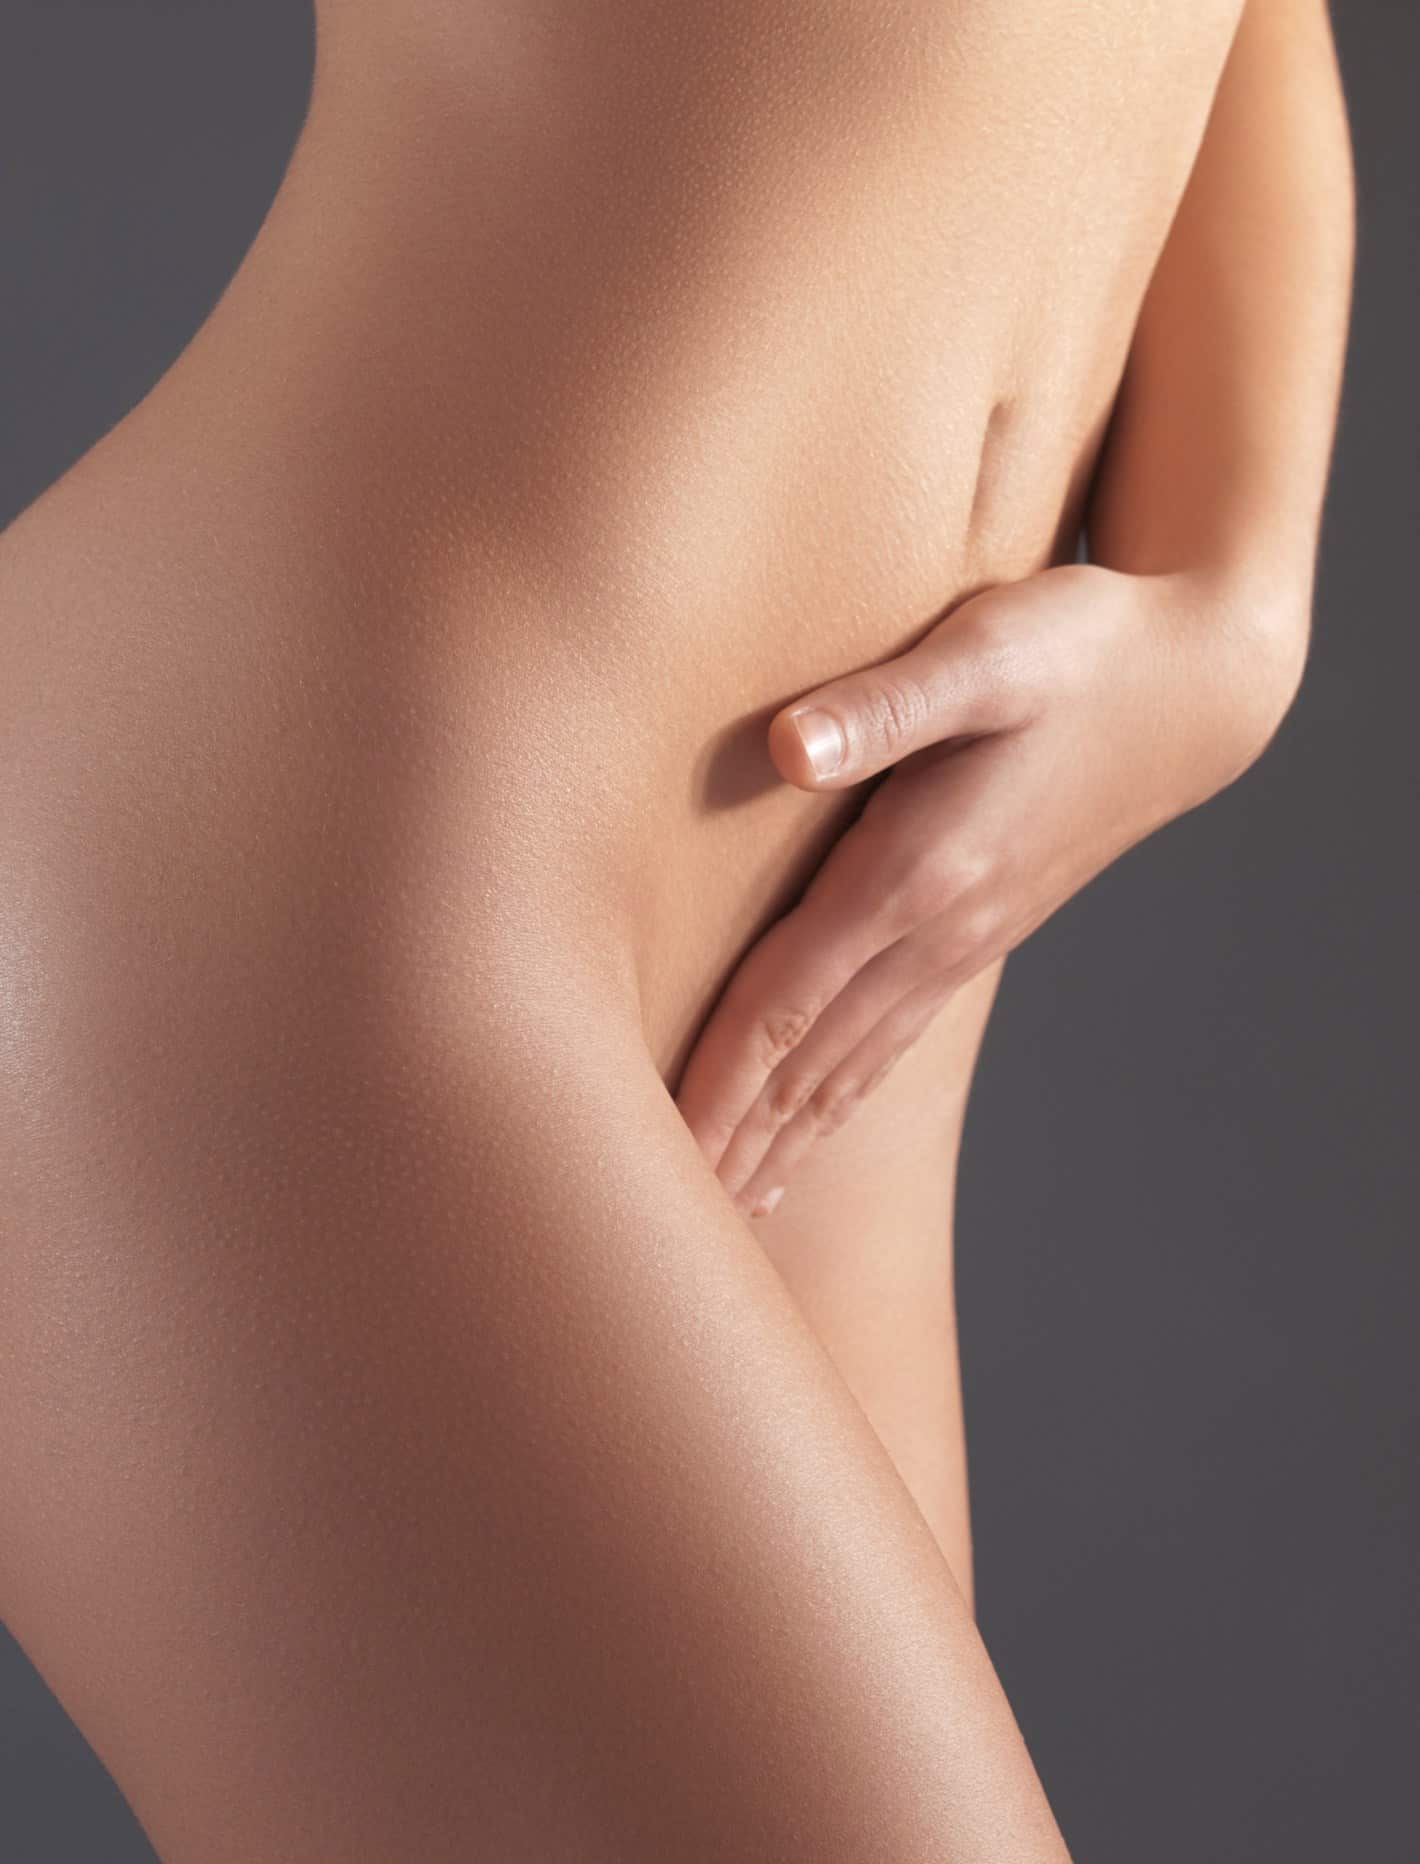 Femme touchant sa partie intime aprés hymenoplastie au centre Esthetique Tremoille Paris 8